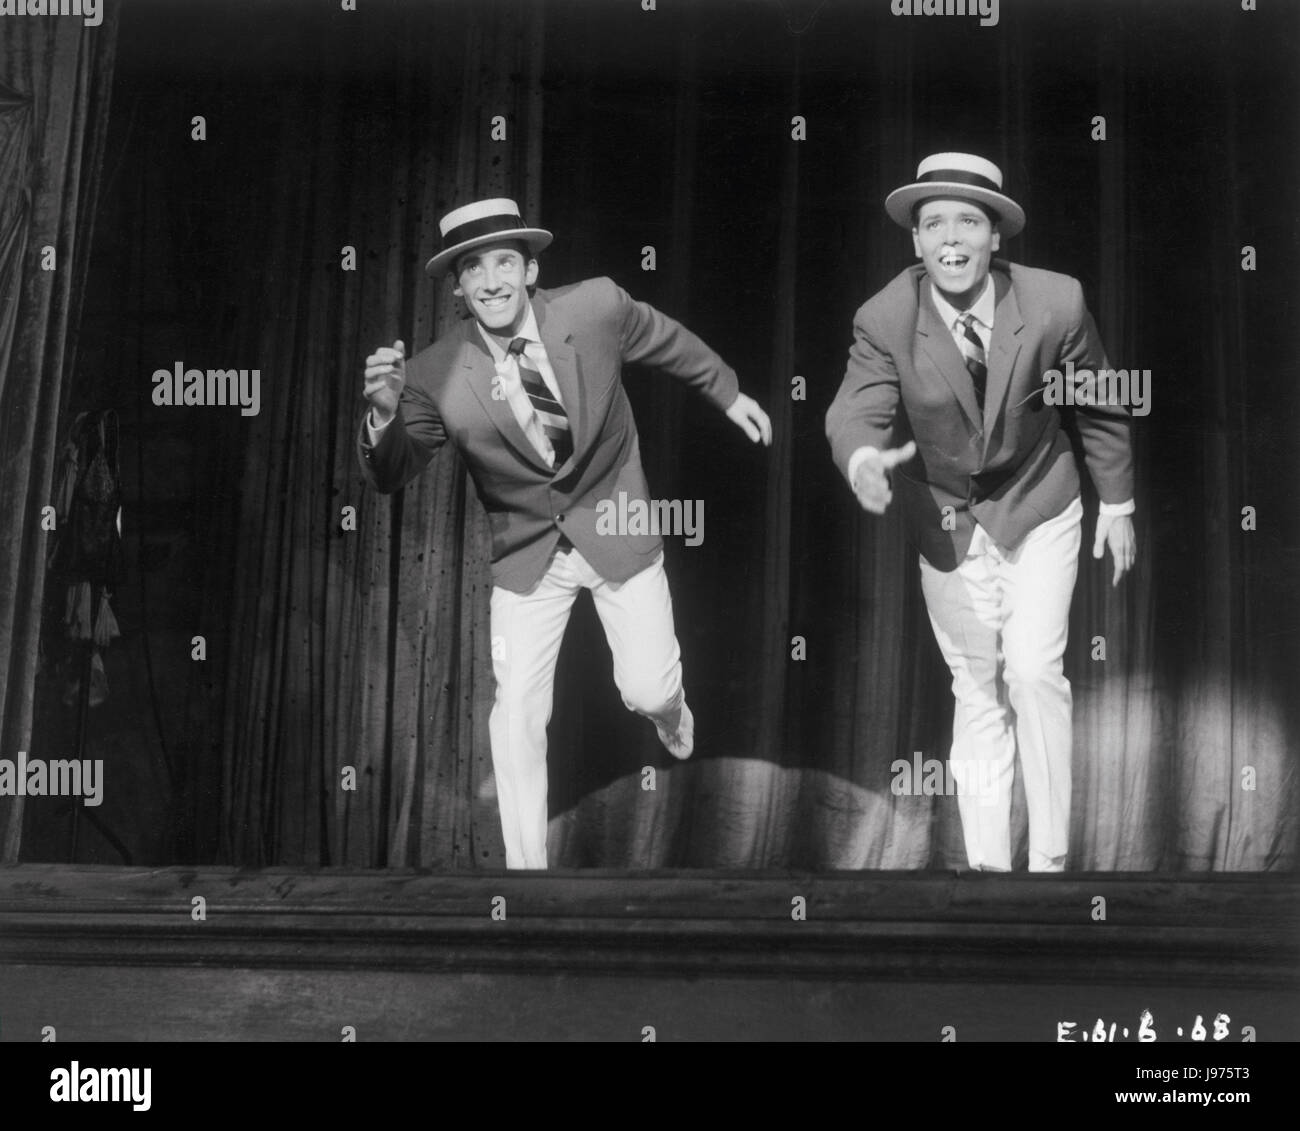 Les JEUNES UK 1961 Sidney J. FURIE La danse MELVYN HAYES (Jimmy) et Cliff Richard (Nicky) sur scène. Regie : Sidney J. FURIE Banque D'Images